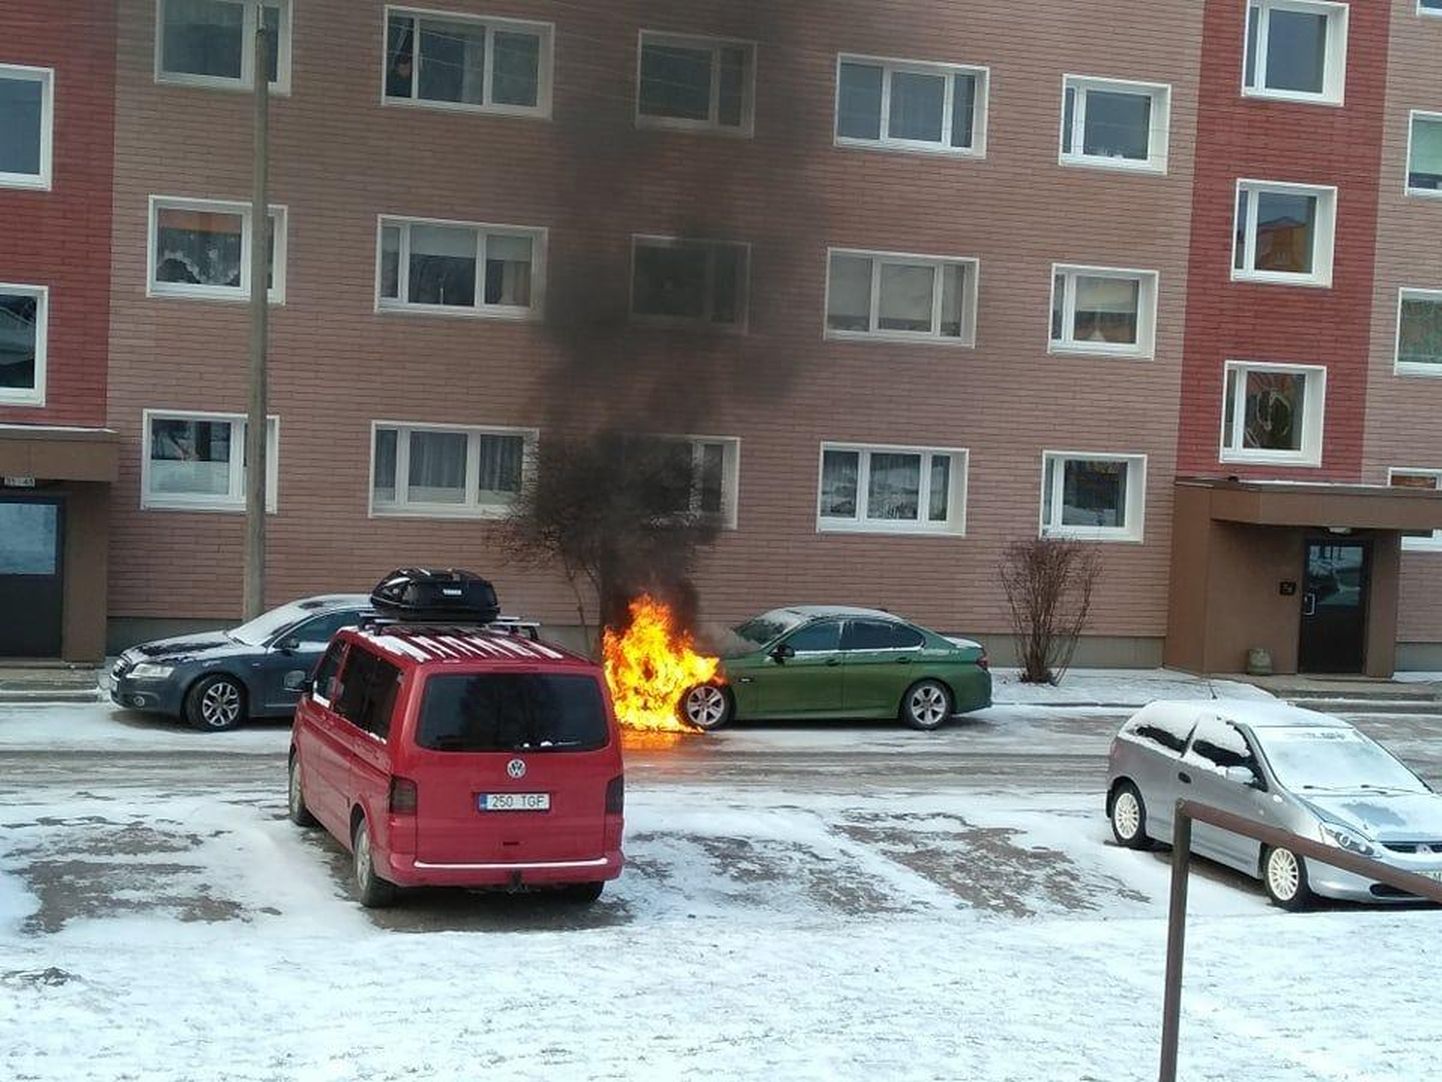 Автомобиль BMW загорелся на парковке у дома на Мяннимяэ в Вильянди.